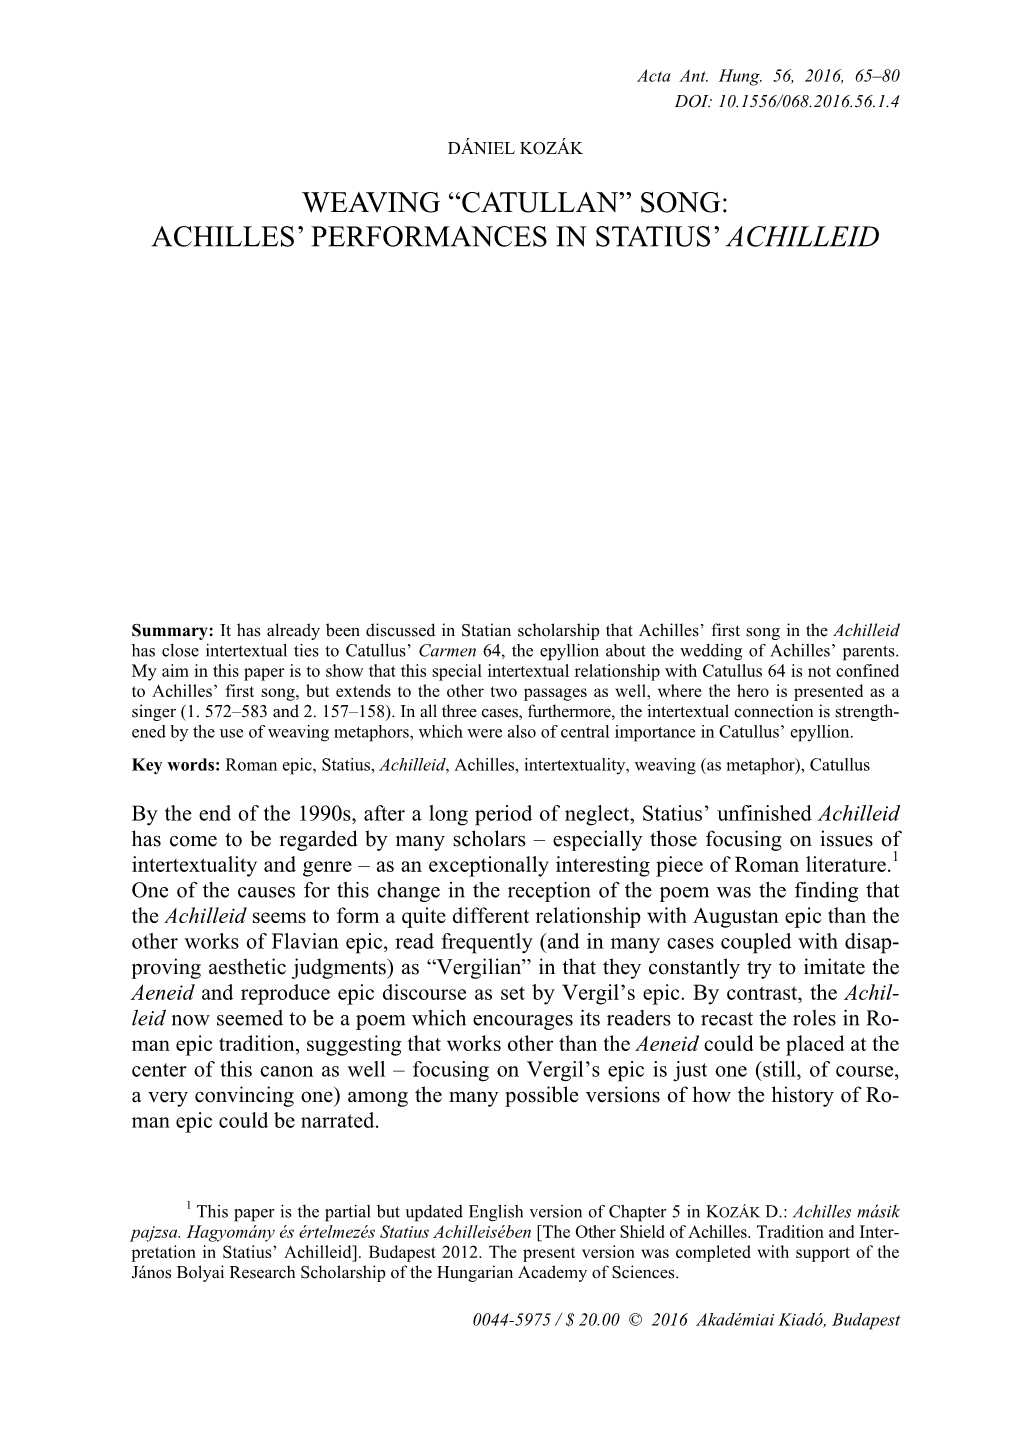 Achilles' Performances in Statius' Achilleid